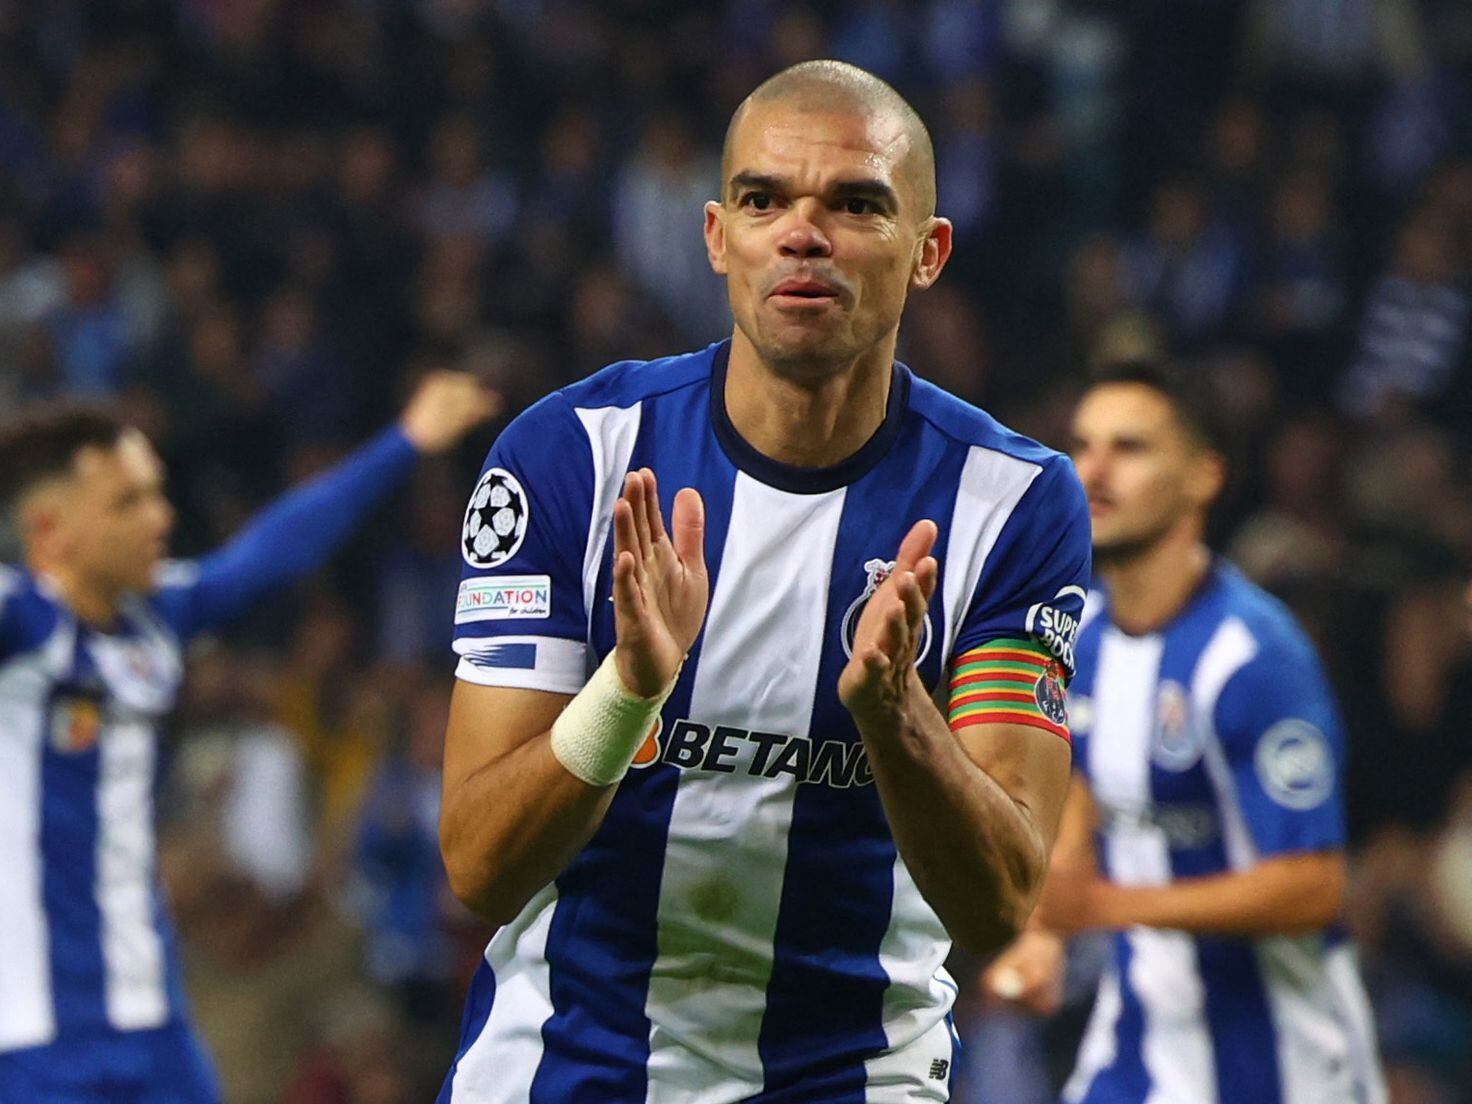 Pepe marca de cabeça e faz história na Champions League